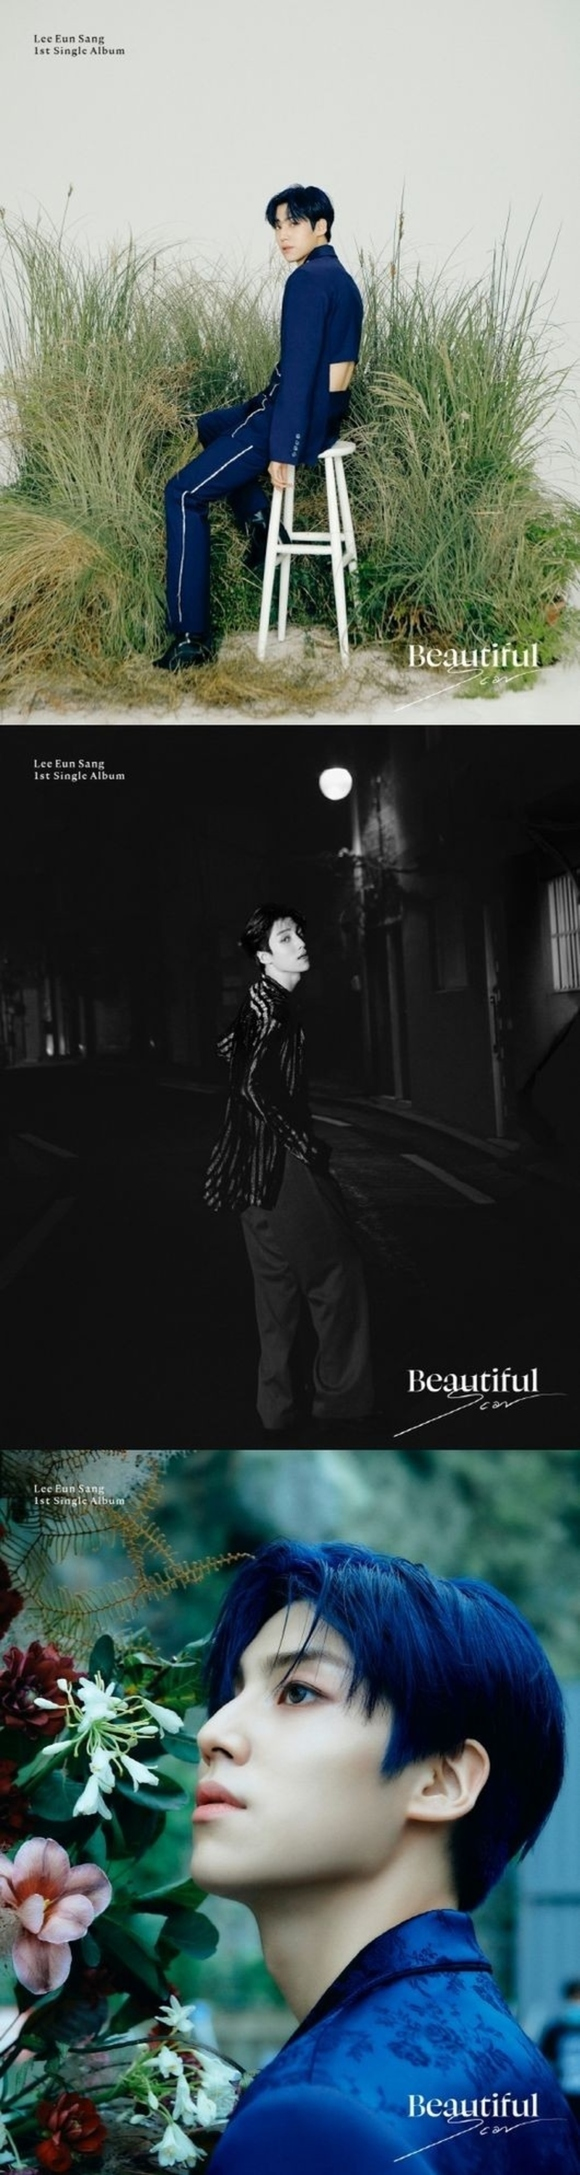 李垠尚公开自己第一张solo单曲《Beautiful Scar》的第二张预告照